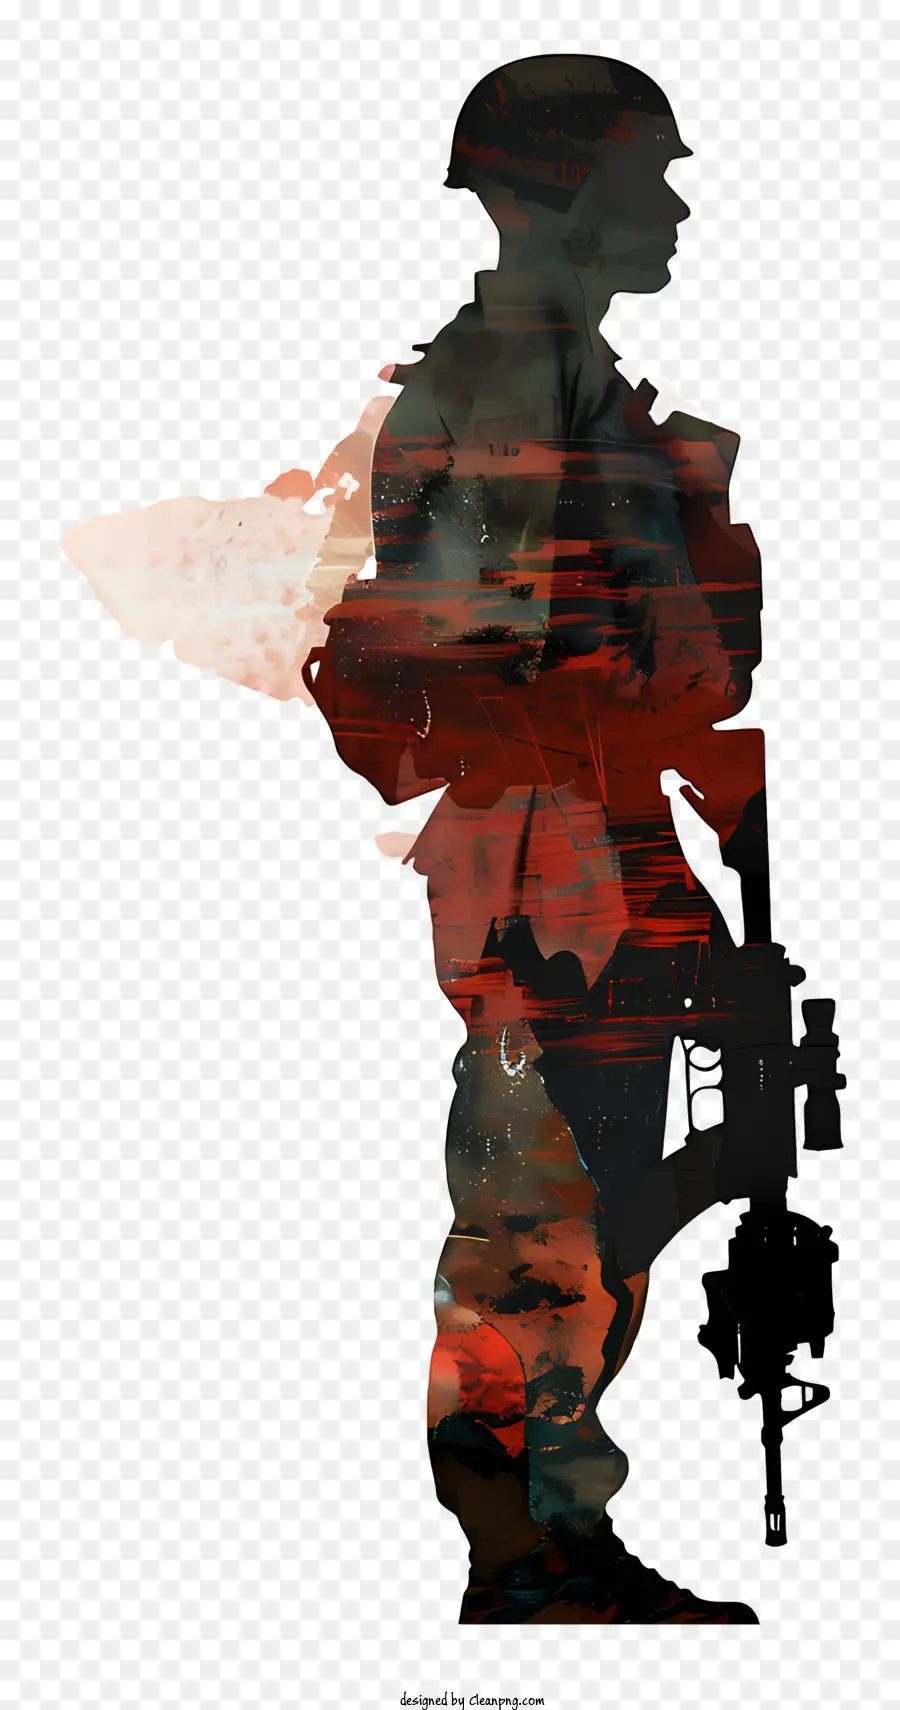 soldato silhouette - Soldato con fucile in piedi davanti alla roccia